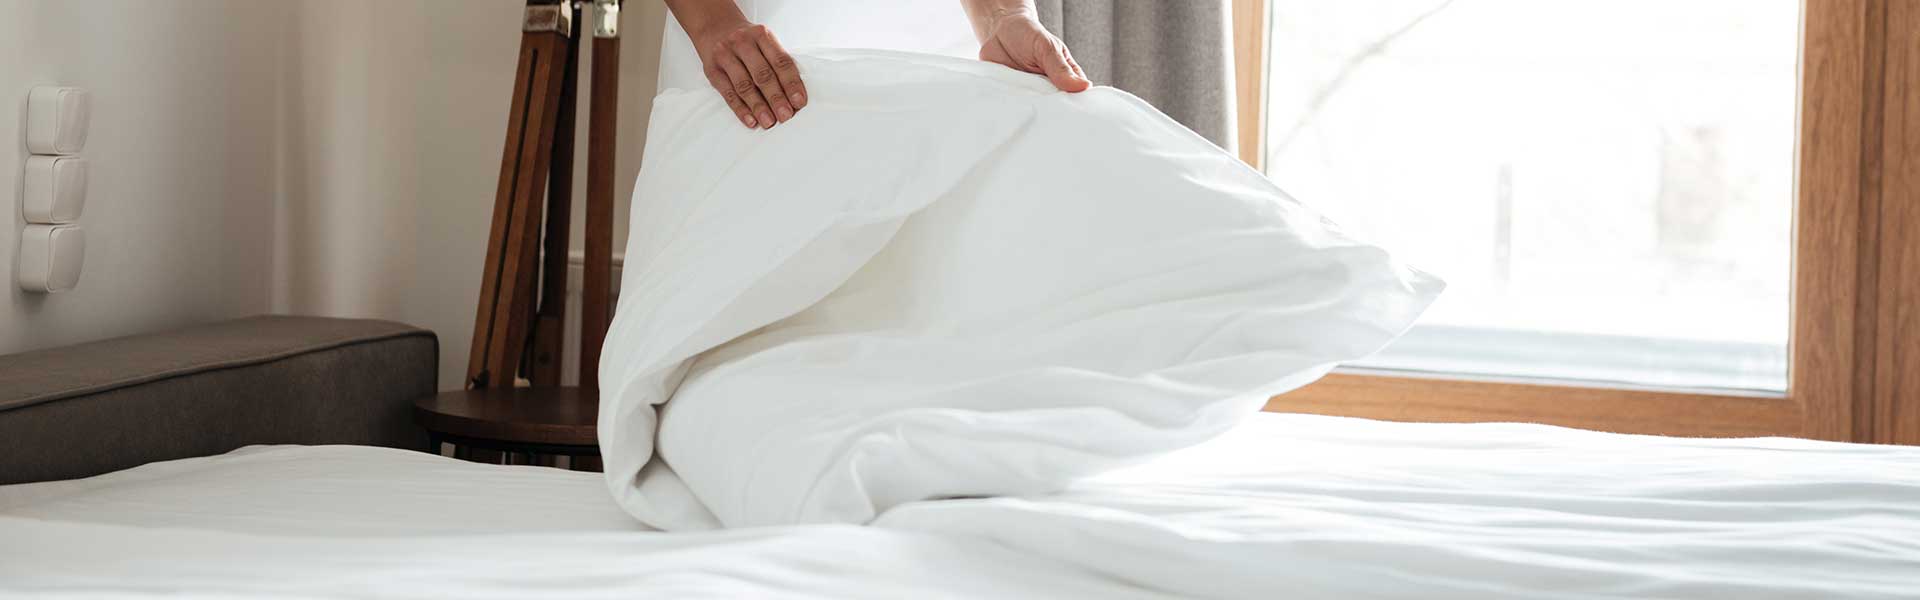 Cuáles son las ventajas de las sábanas de algodón egipcio